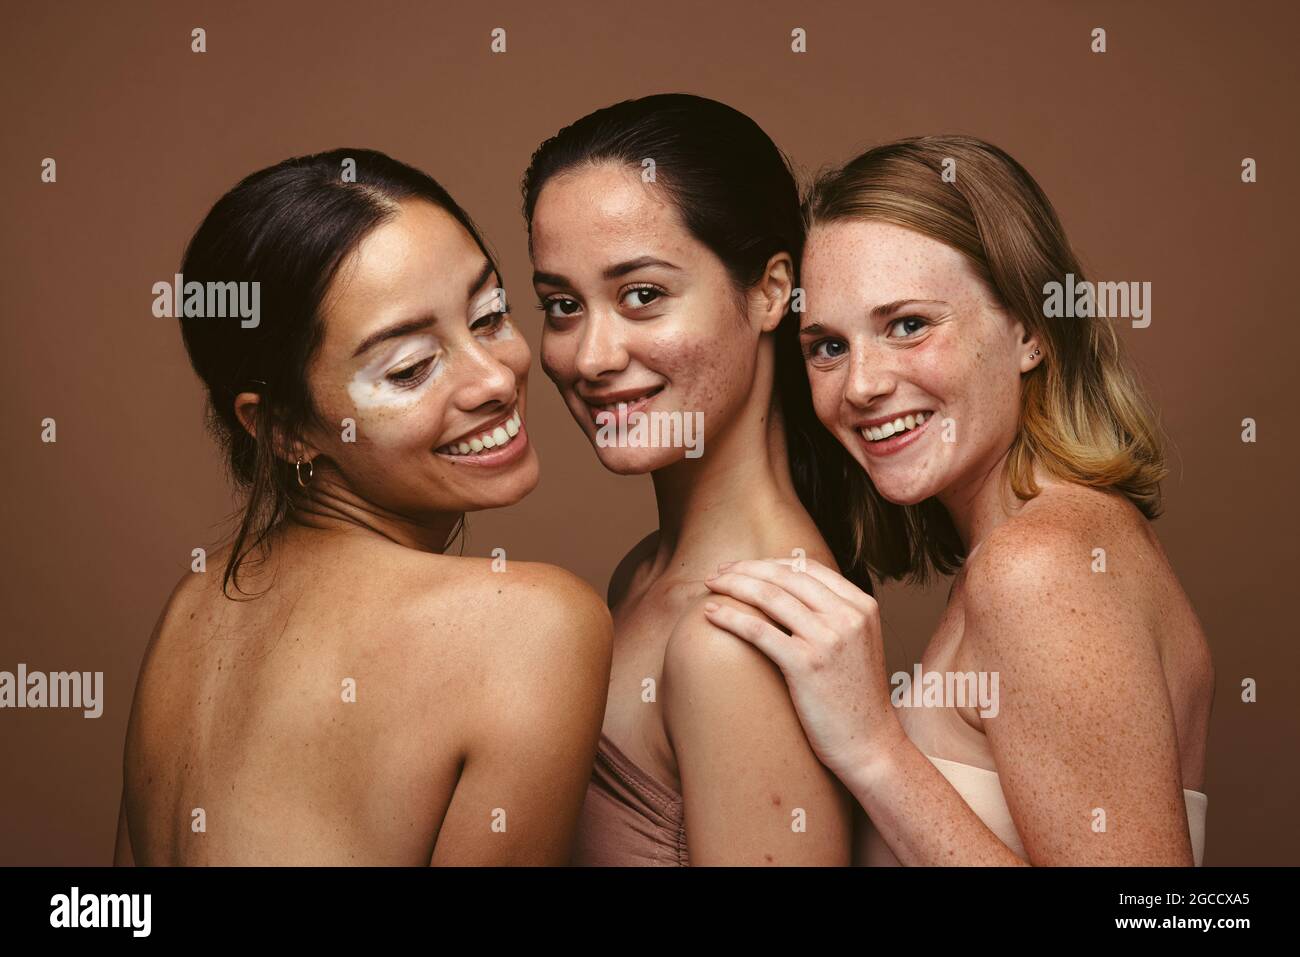 Gros plan de trois femmes ayant des problèmes de peau debout ensemble sur fond marron. Jeunes femmes confiantes avec des imperfections de la peau reflétant la posi du corps Banque D'Images